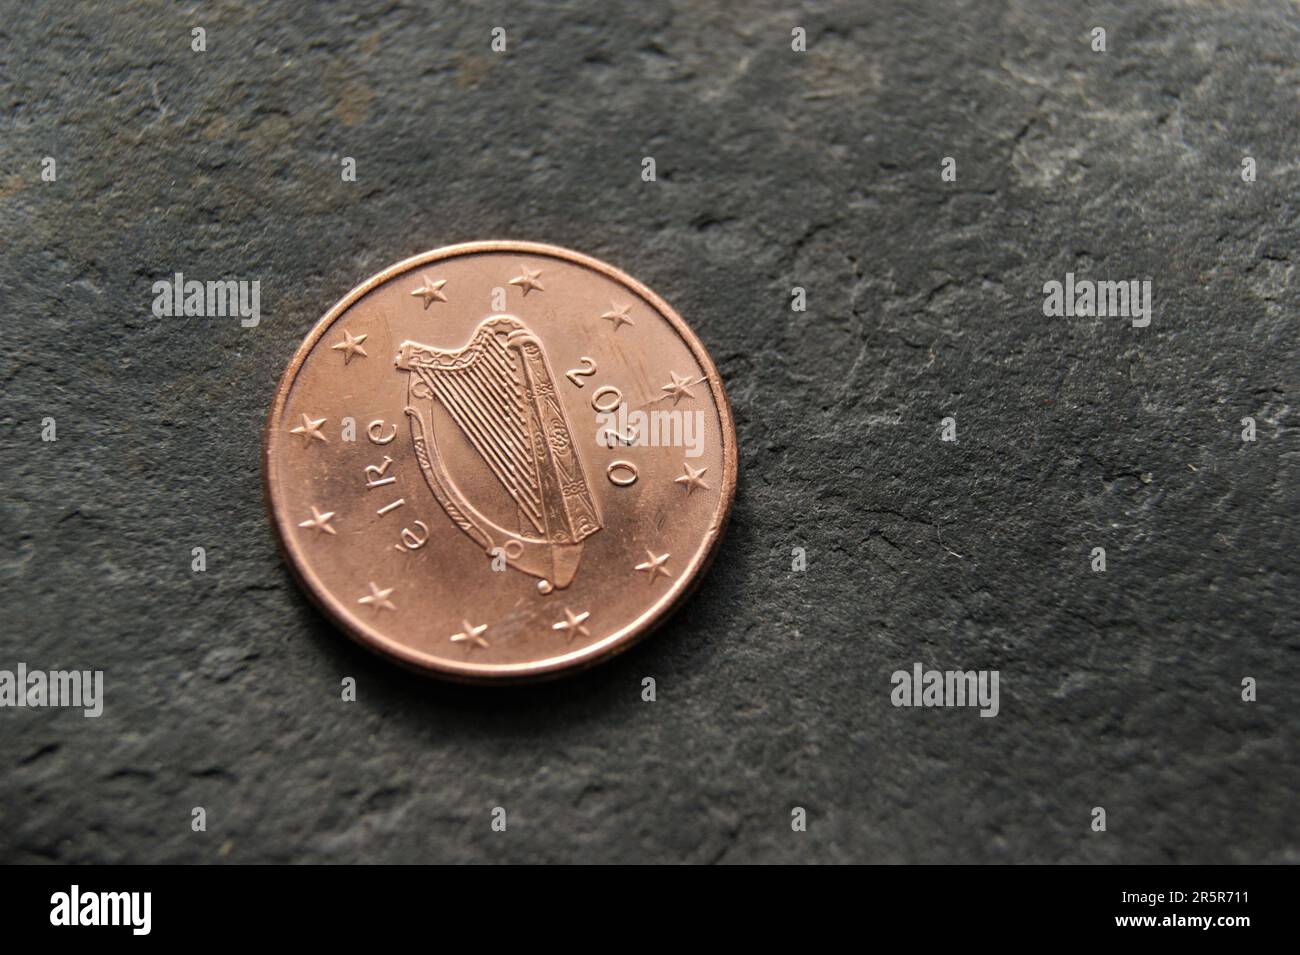 Harpe sur une pièce européenne. Pièce de monnaie irlandaise en centime d'euro. Banque D'Images